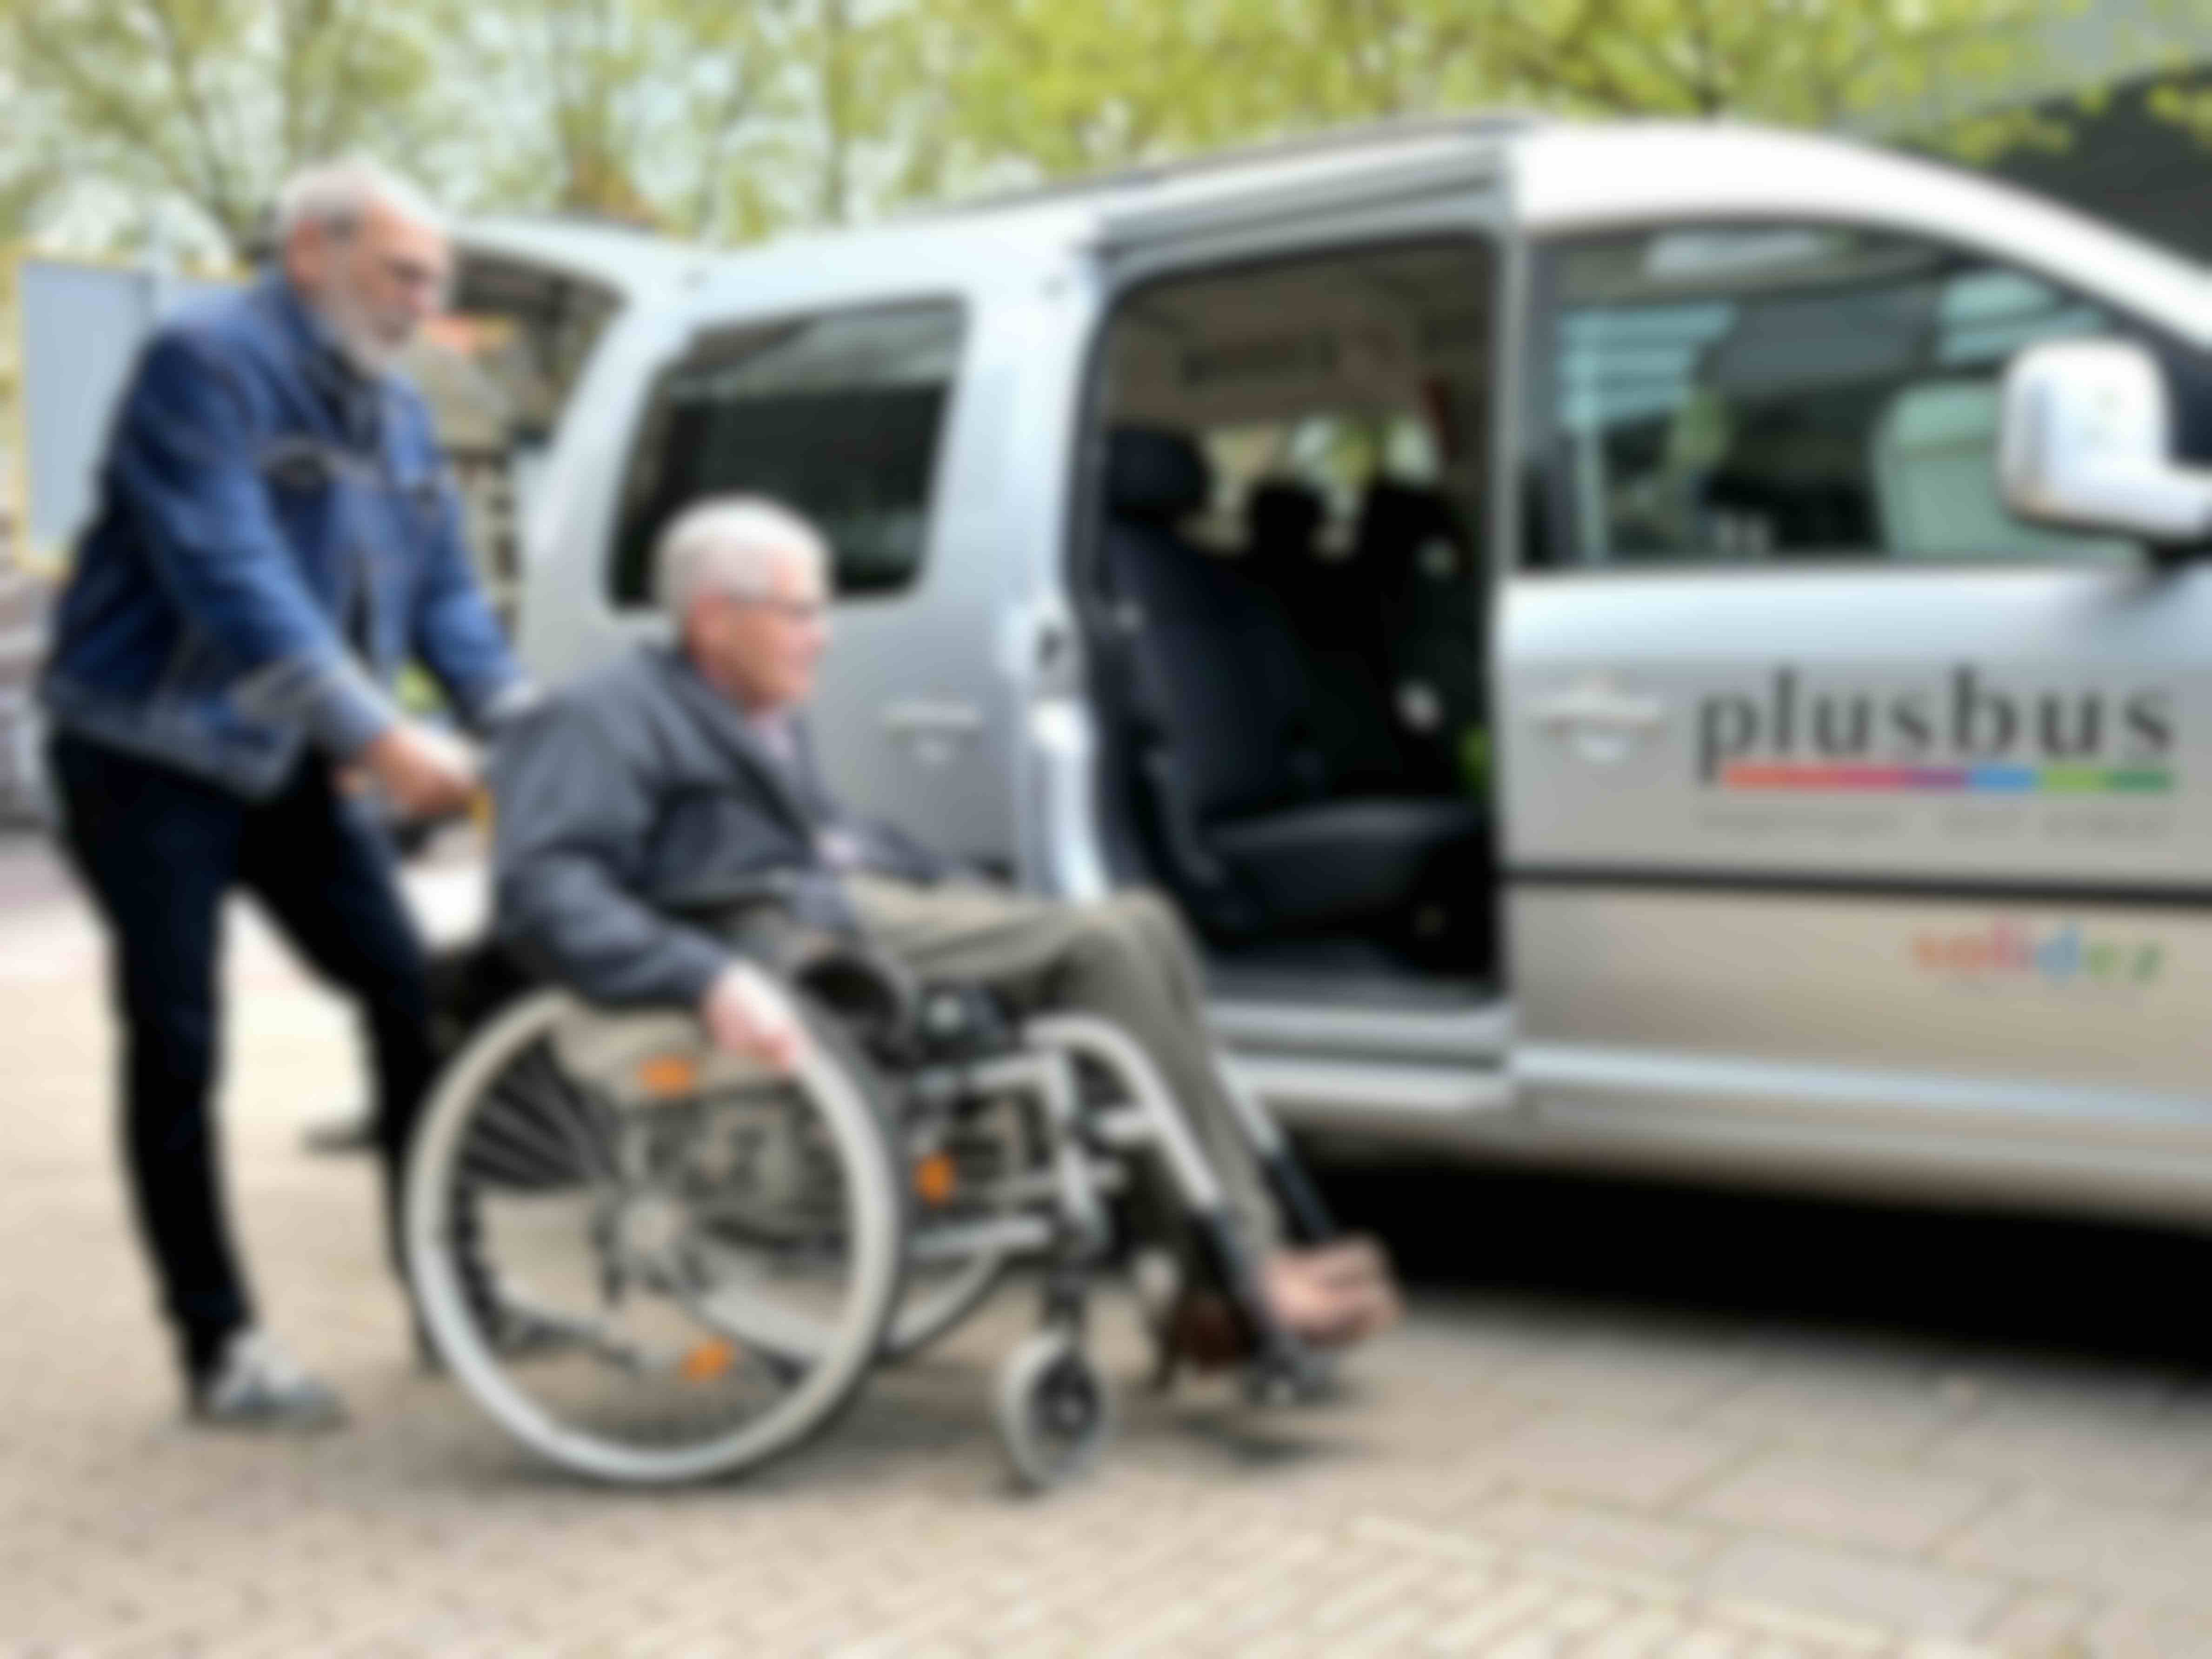  Volunteer Plusbus Driver